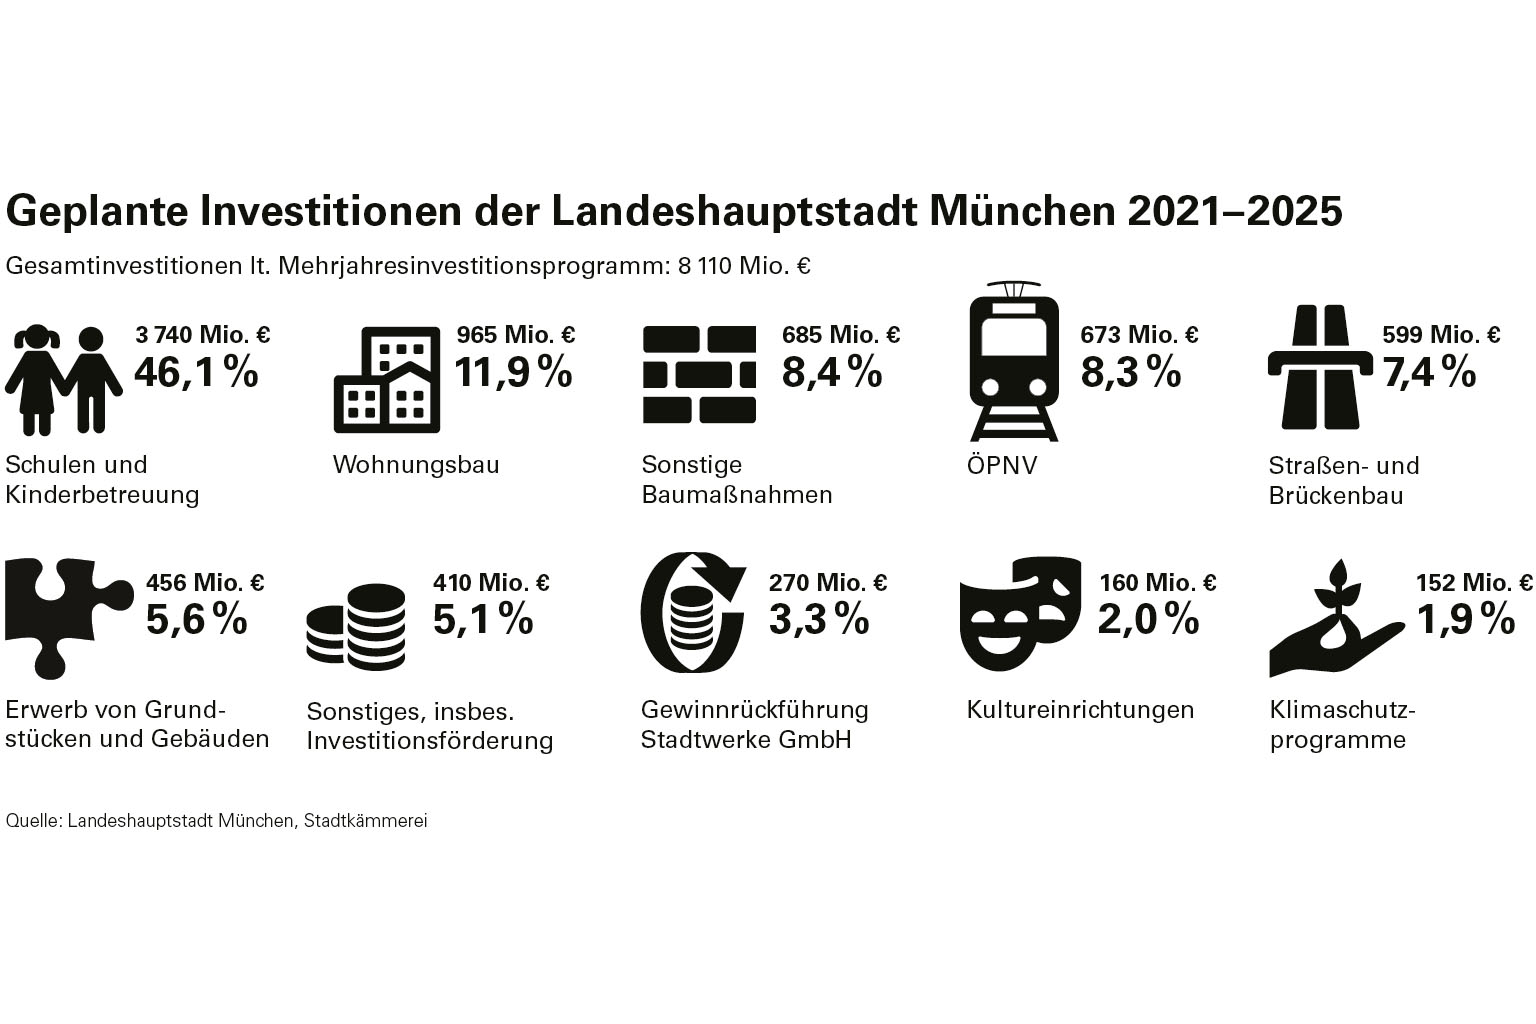 Geplante Investitionen der Stadt München 2021 - 2025 , grafische Darstellung nach Bereichen